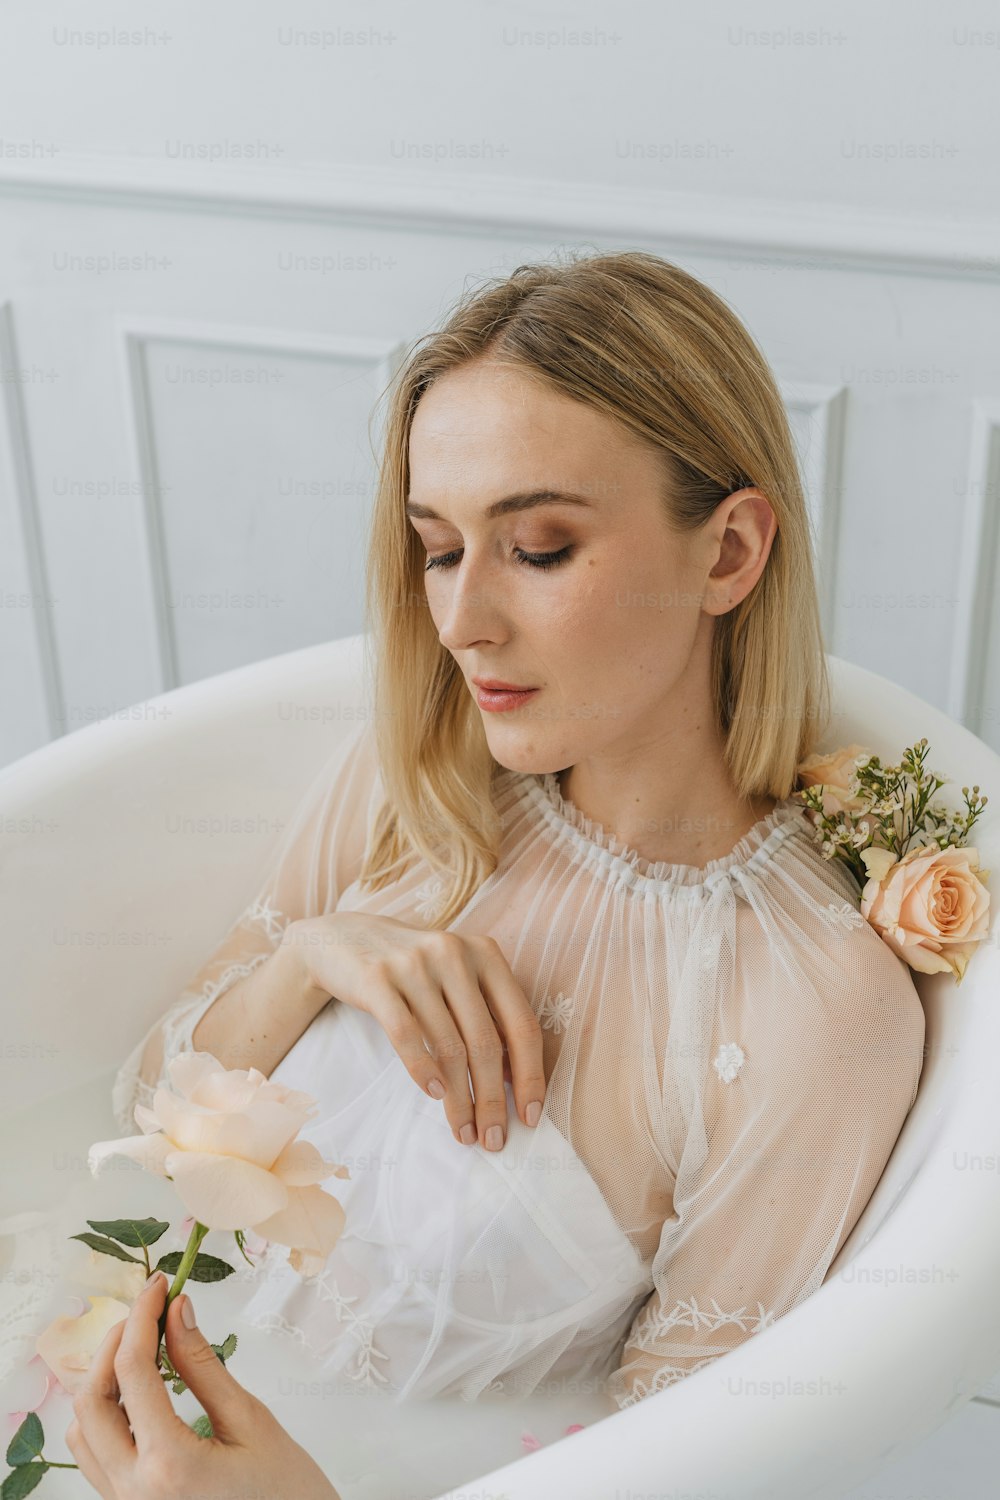 Una mujer sentada en una bañera sosteniendo una flor